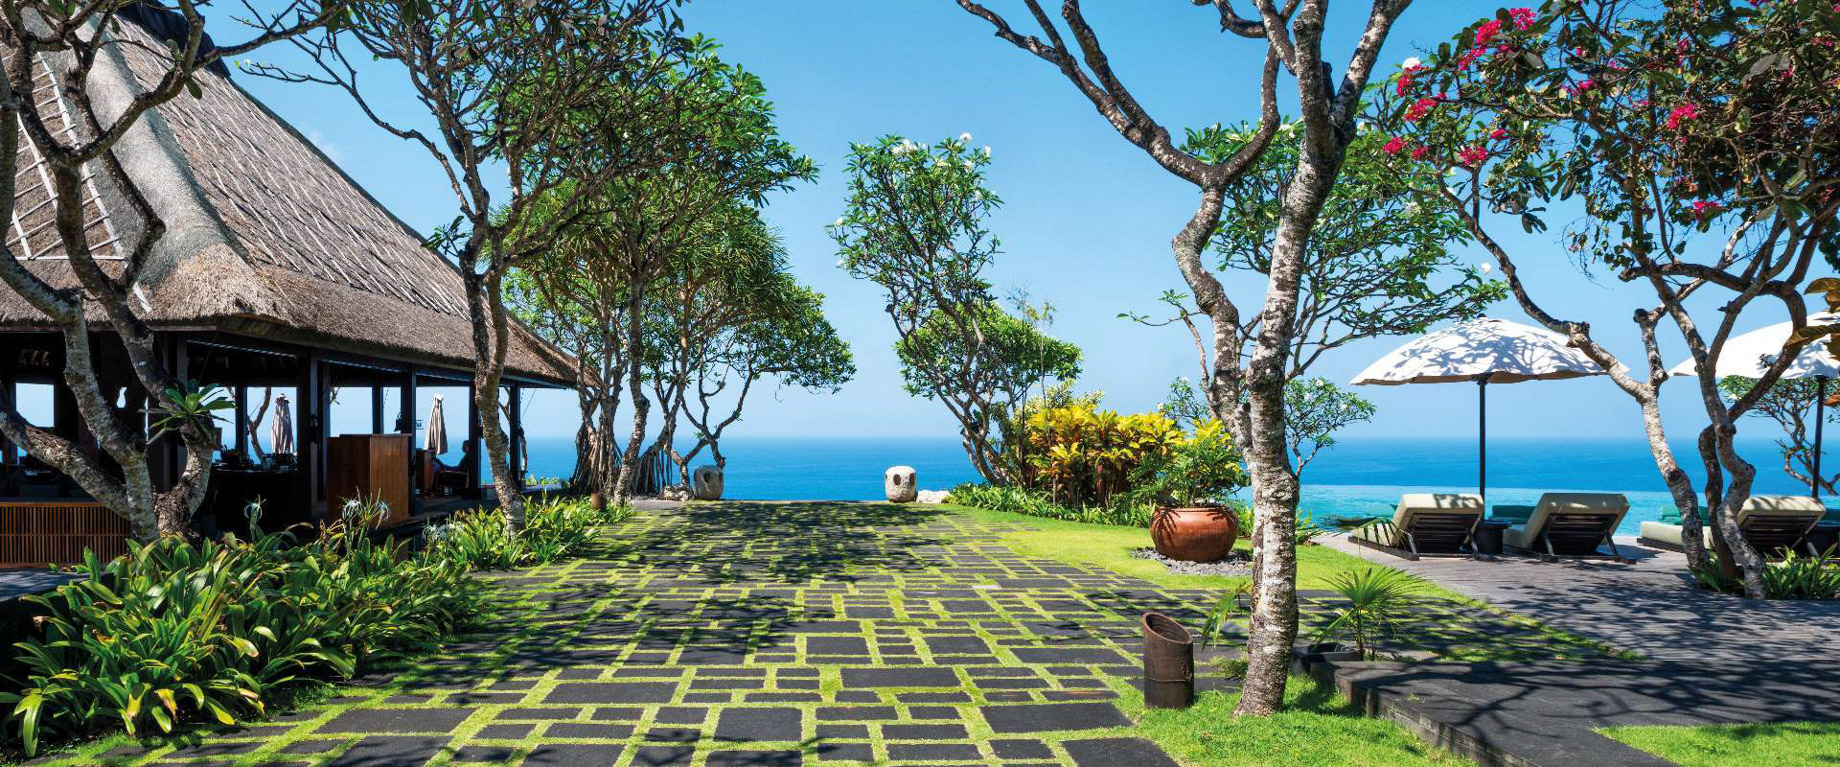 Bvlgari Resort Bali – Uluwatu, Bali, Indonesia – Bvlgari Bar Ocean View Pool Deck